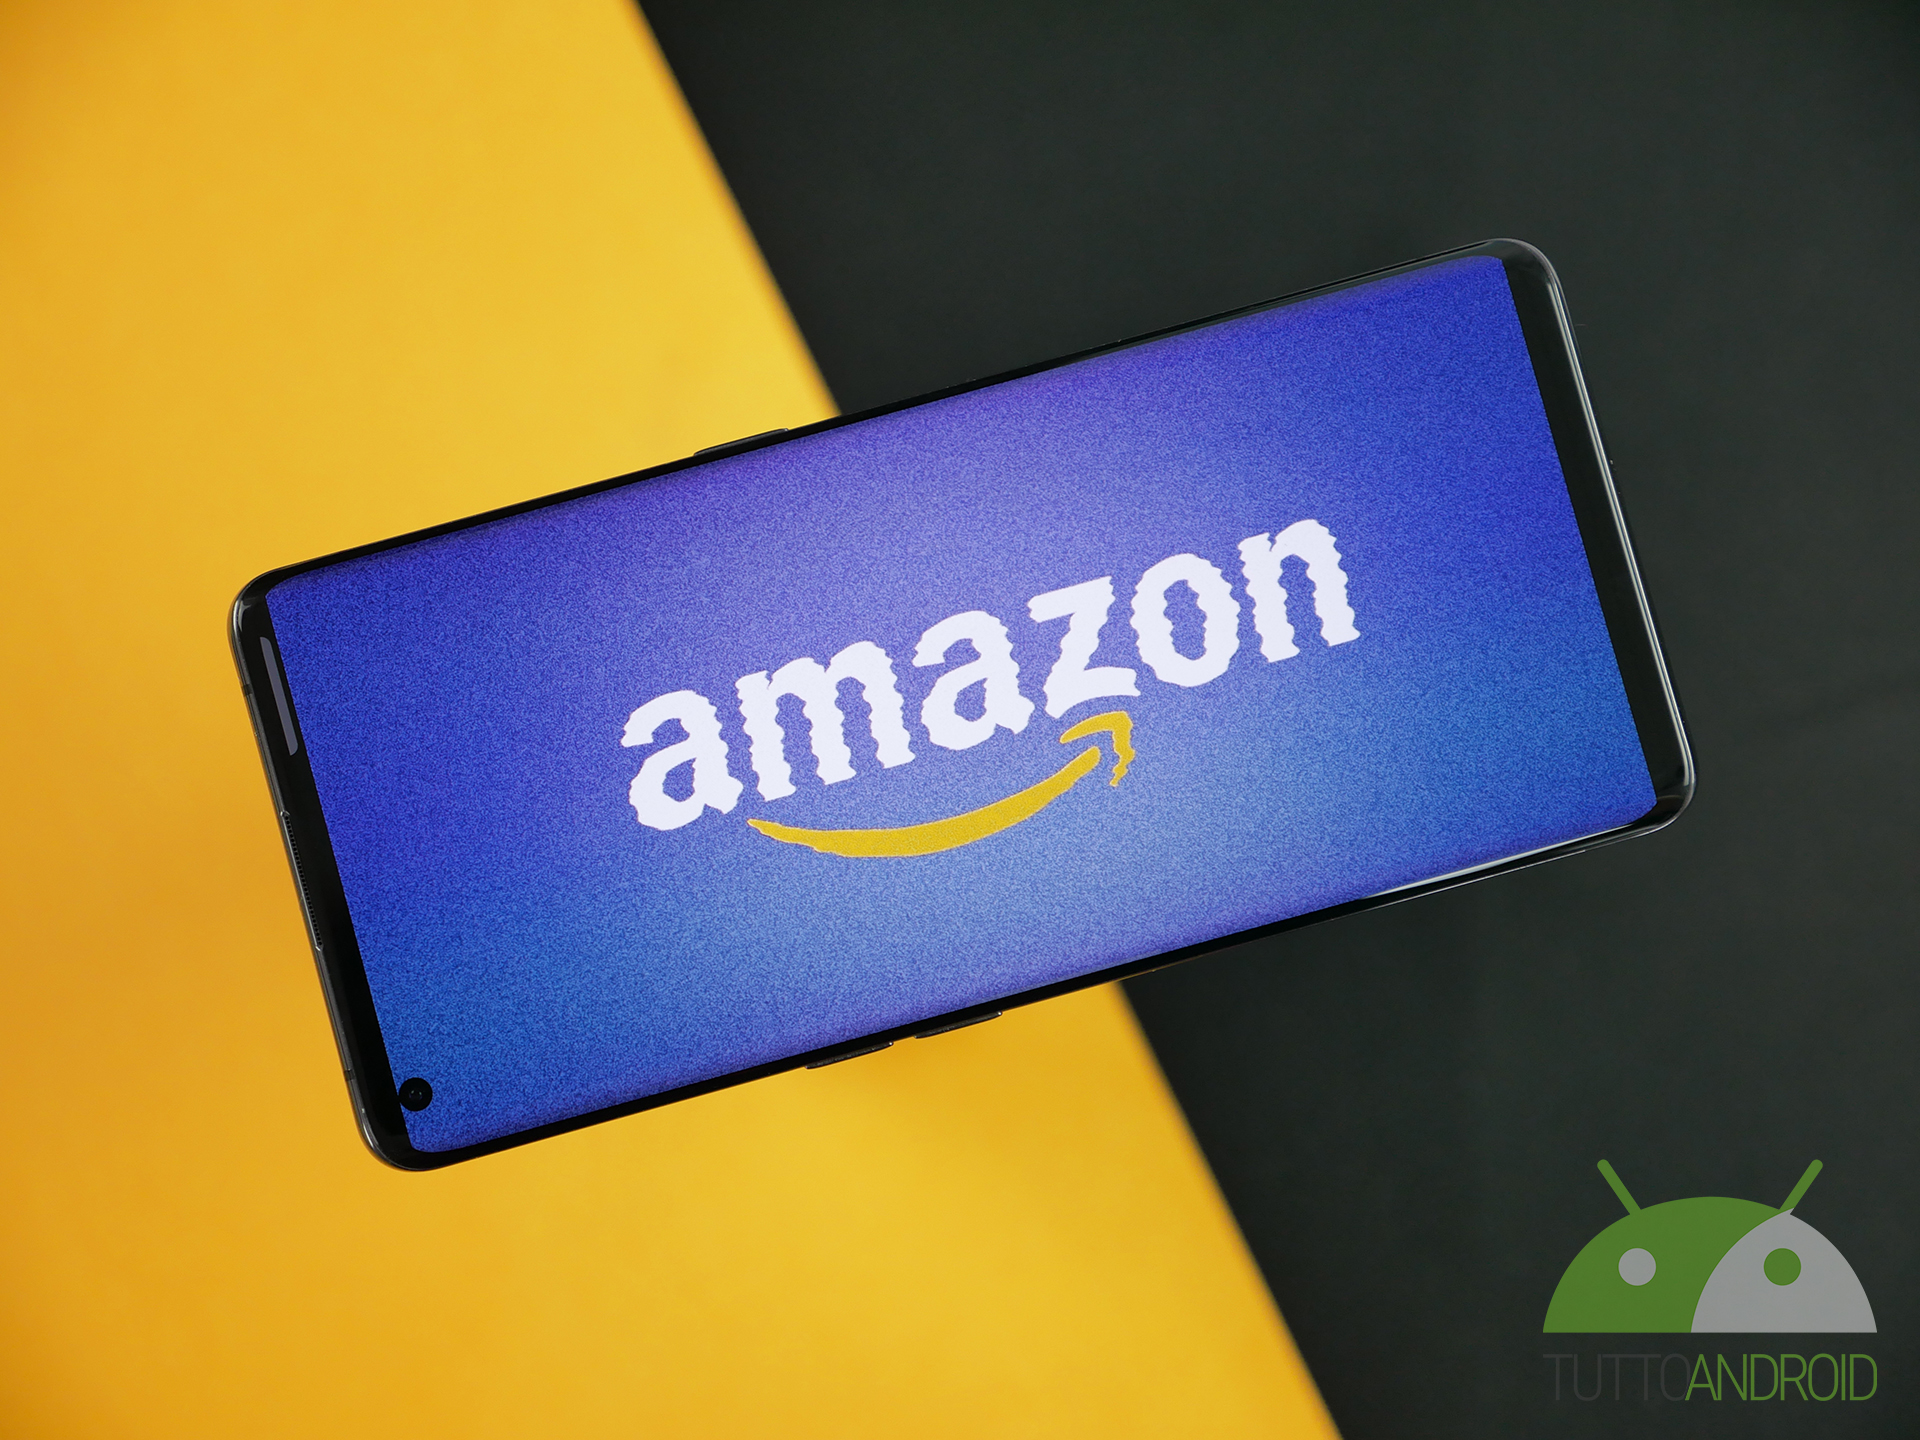 Non fatevi imbrogliare: consigli utili per riconoscere le recensioni false su Amazon